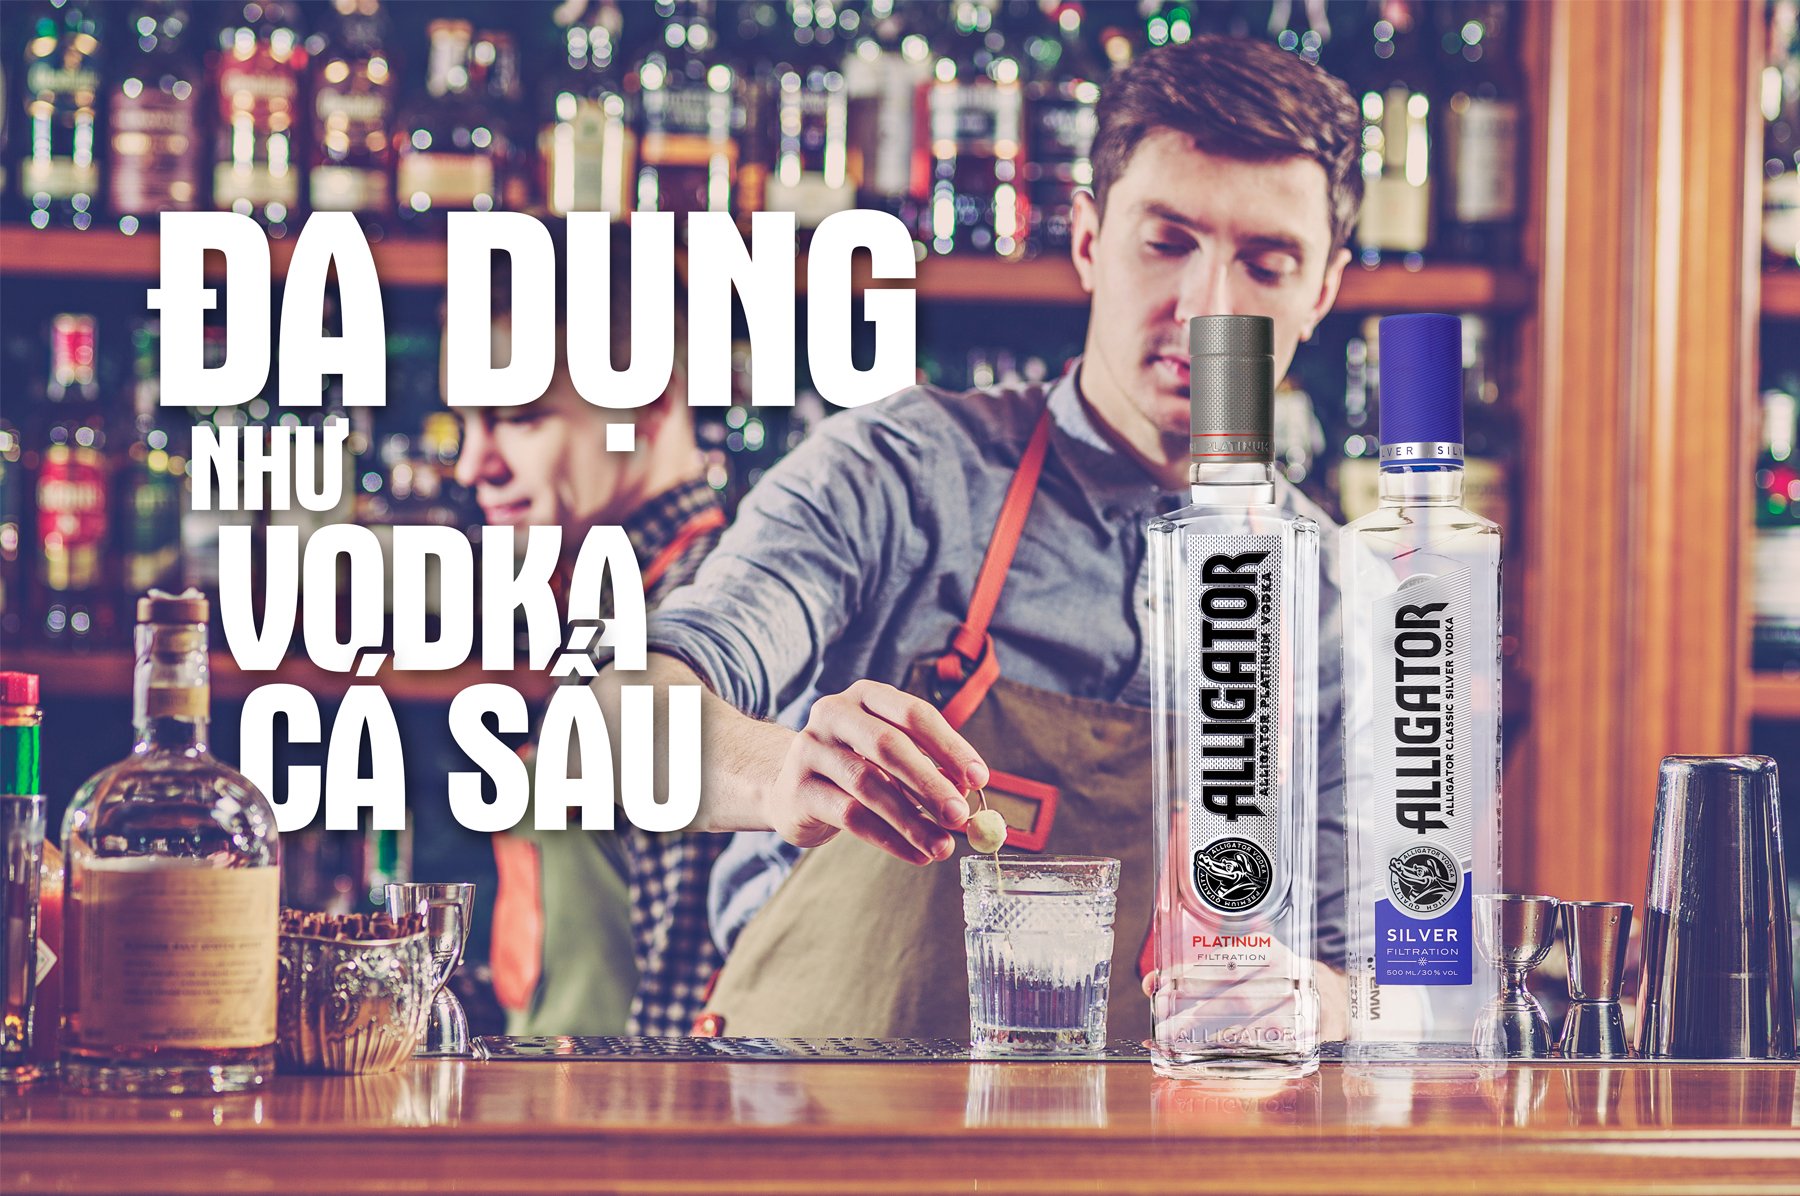 thuong-thuc-vodka-ca-sau-3